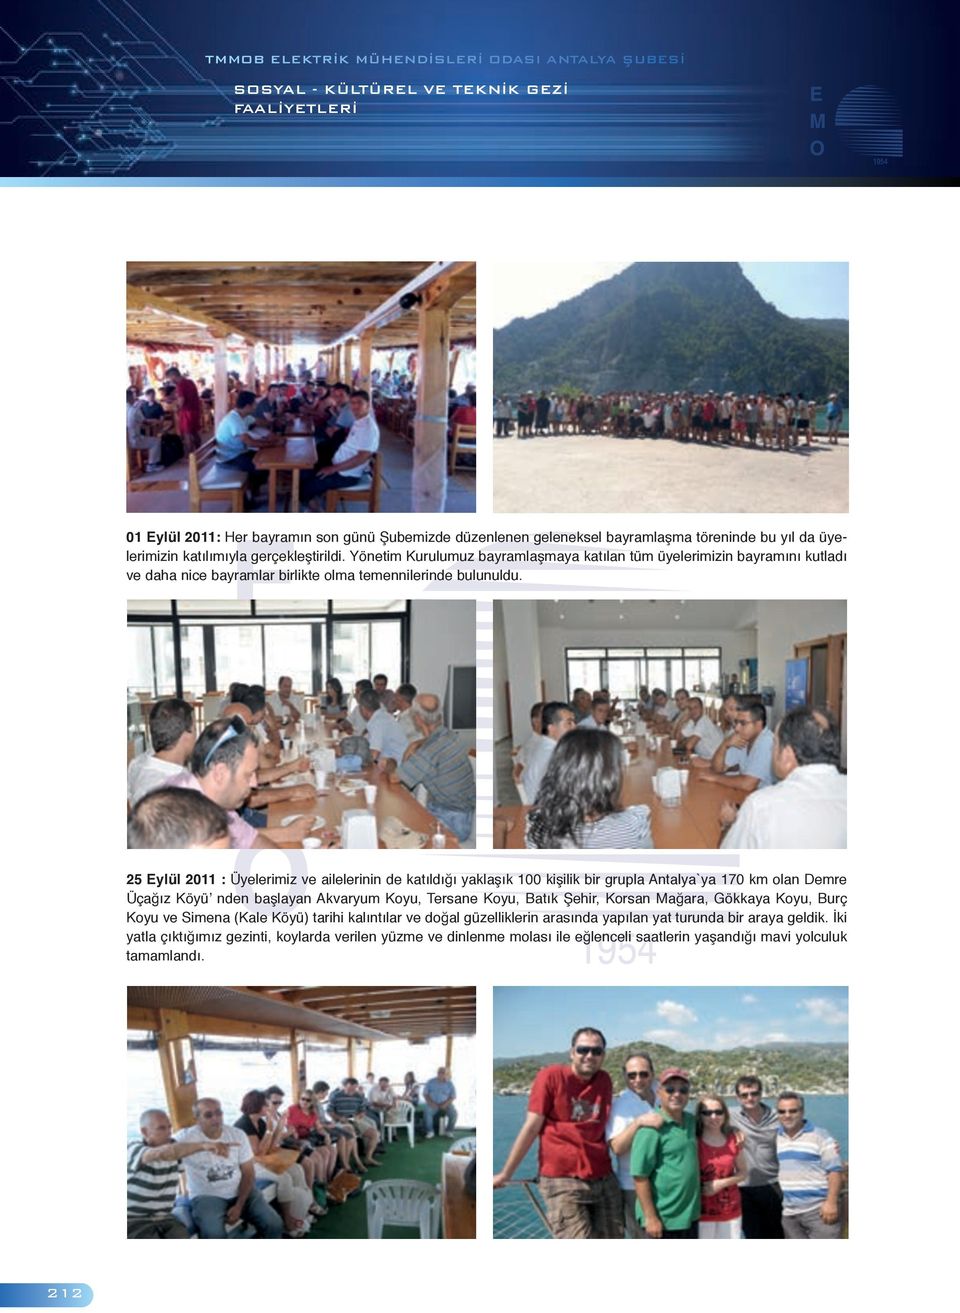 25 Eylül 2011 : Üyelerimiz ve ailelerinin de katıldığı yaklaşık 100 kişilik bir grupla Antalya`ya 170 km olan Demre Üçağız Köyü nden başlayan Akvaryum Koyu, Tersane Koyu, Batık Şehir, Korsan Mağara,